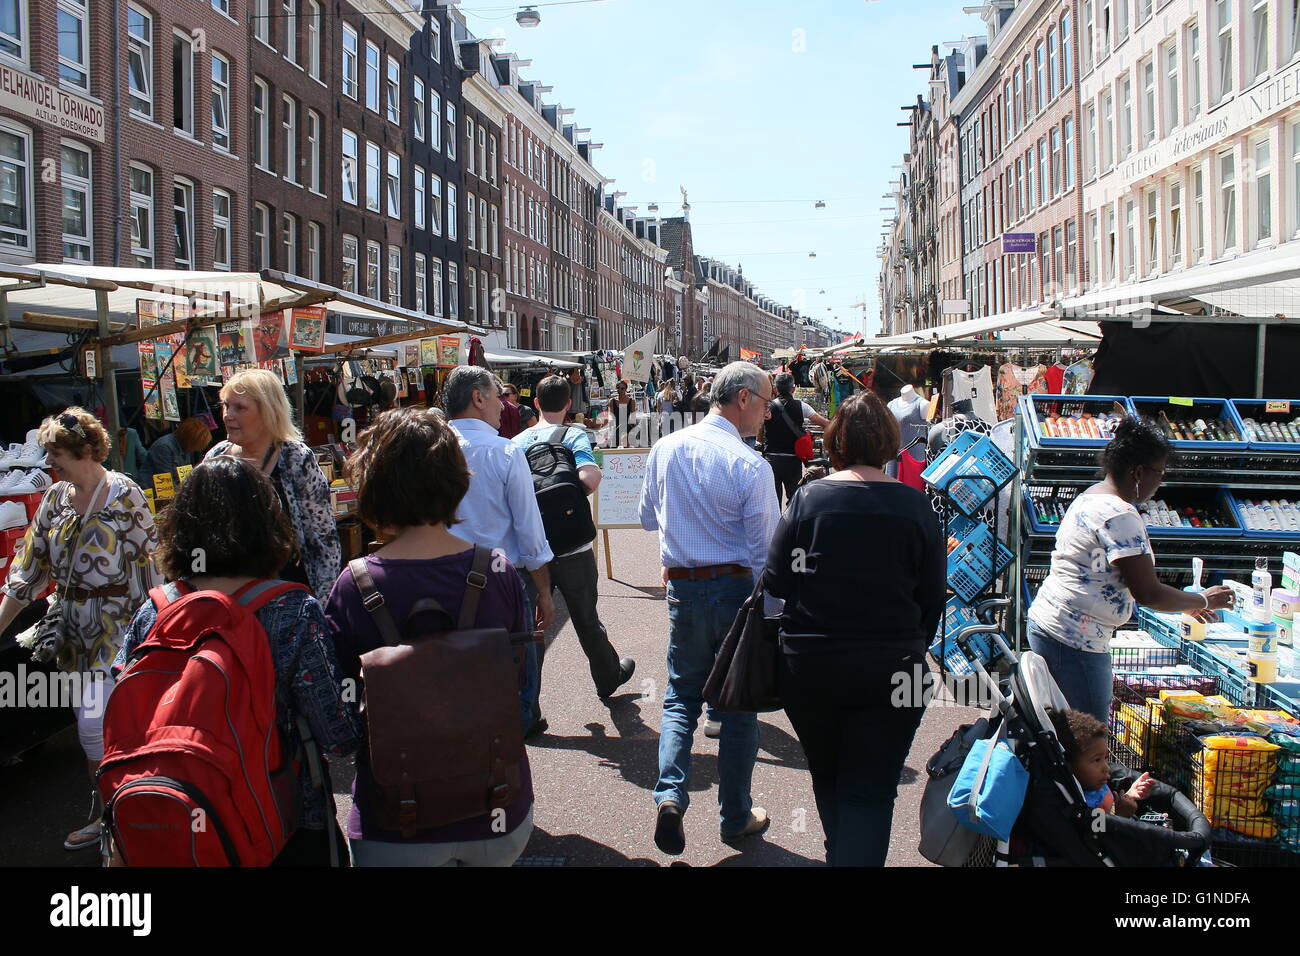 Les vendeurs de rue et beaucoup de gens occupés shopping au marché Albert Cuyp, quartier De Pijp, Oud Zuid, Amsterdam, Pays-Bas Banque D'Images